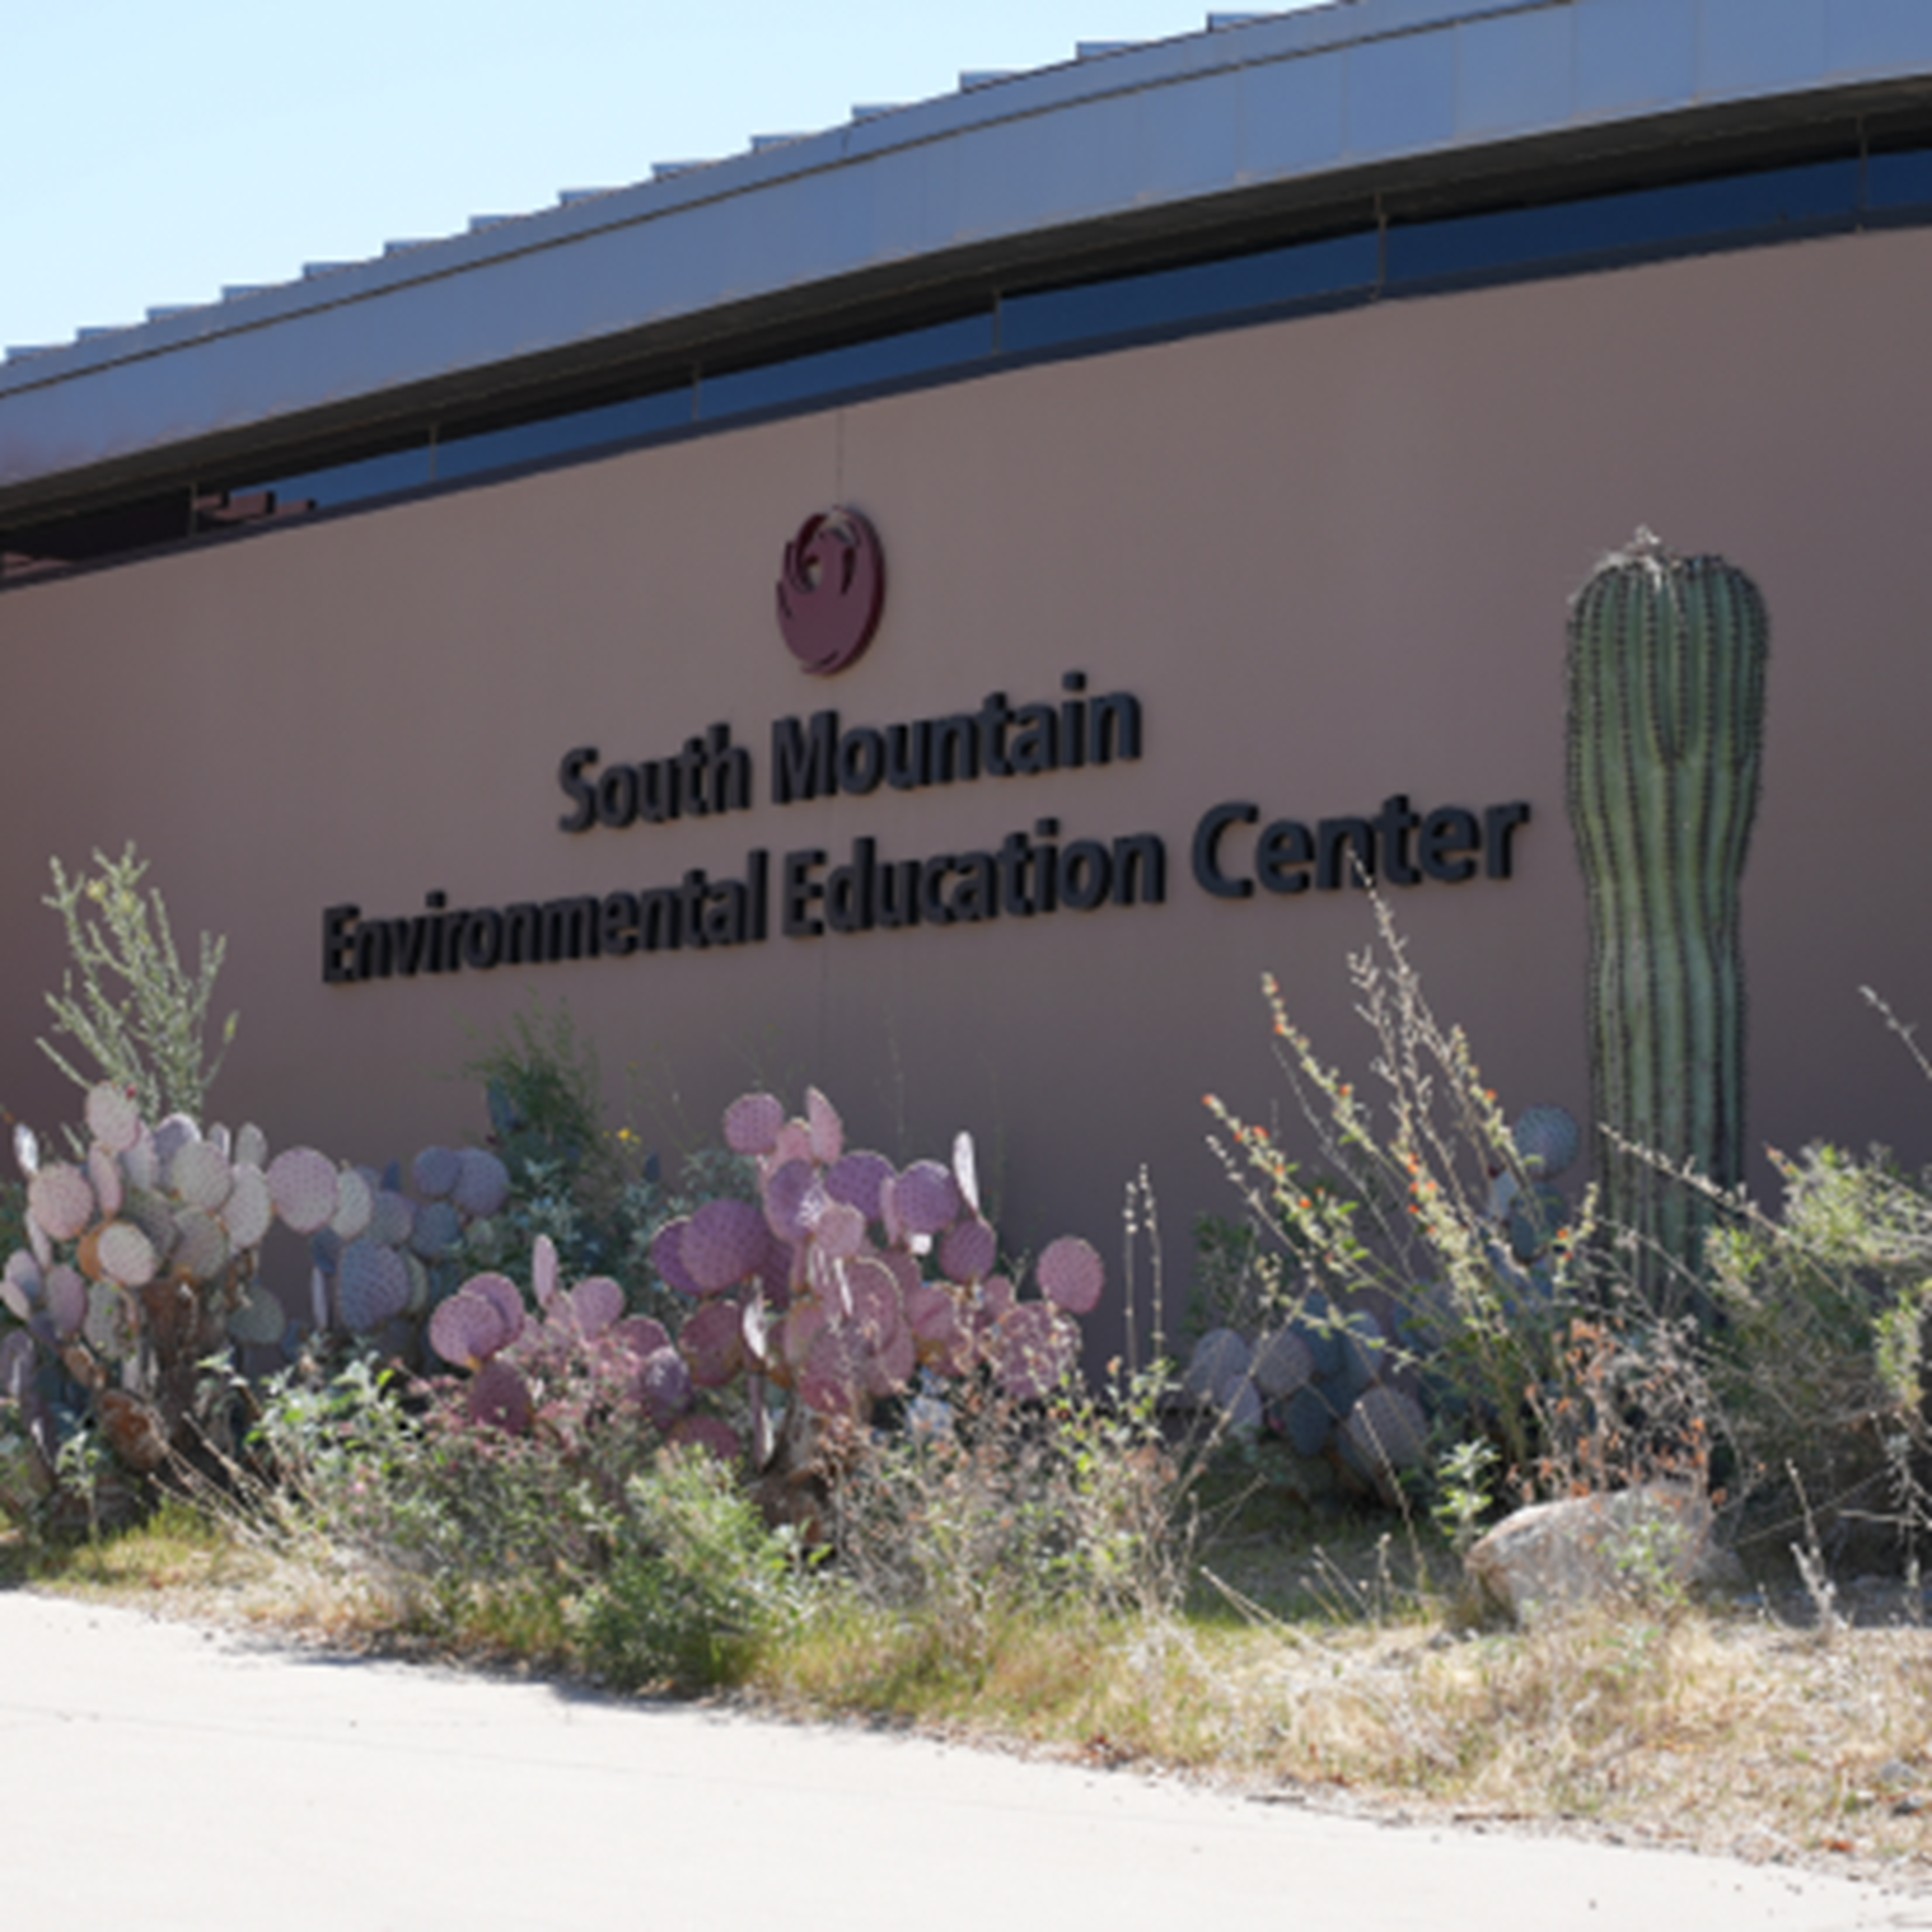 South Mountain Environmental Education Center Sign